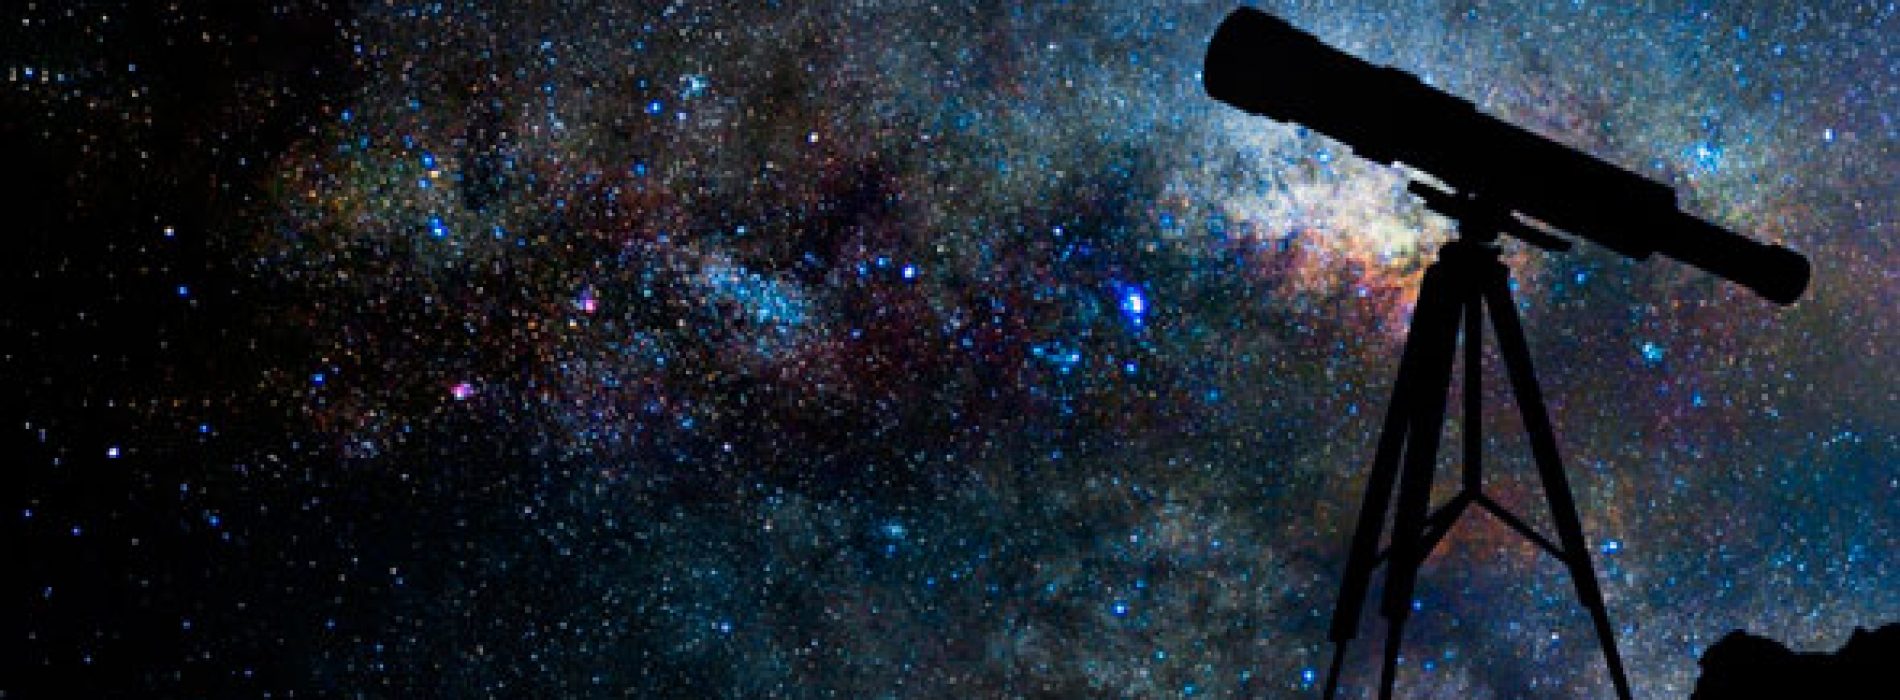 Universidad de Chile dictará curso de astronomía observacional